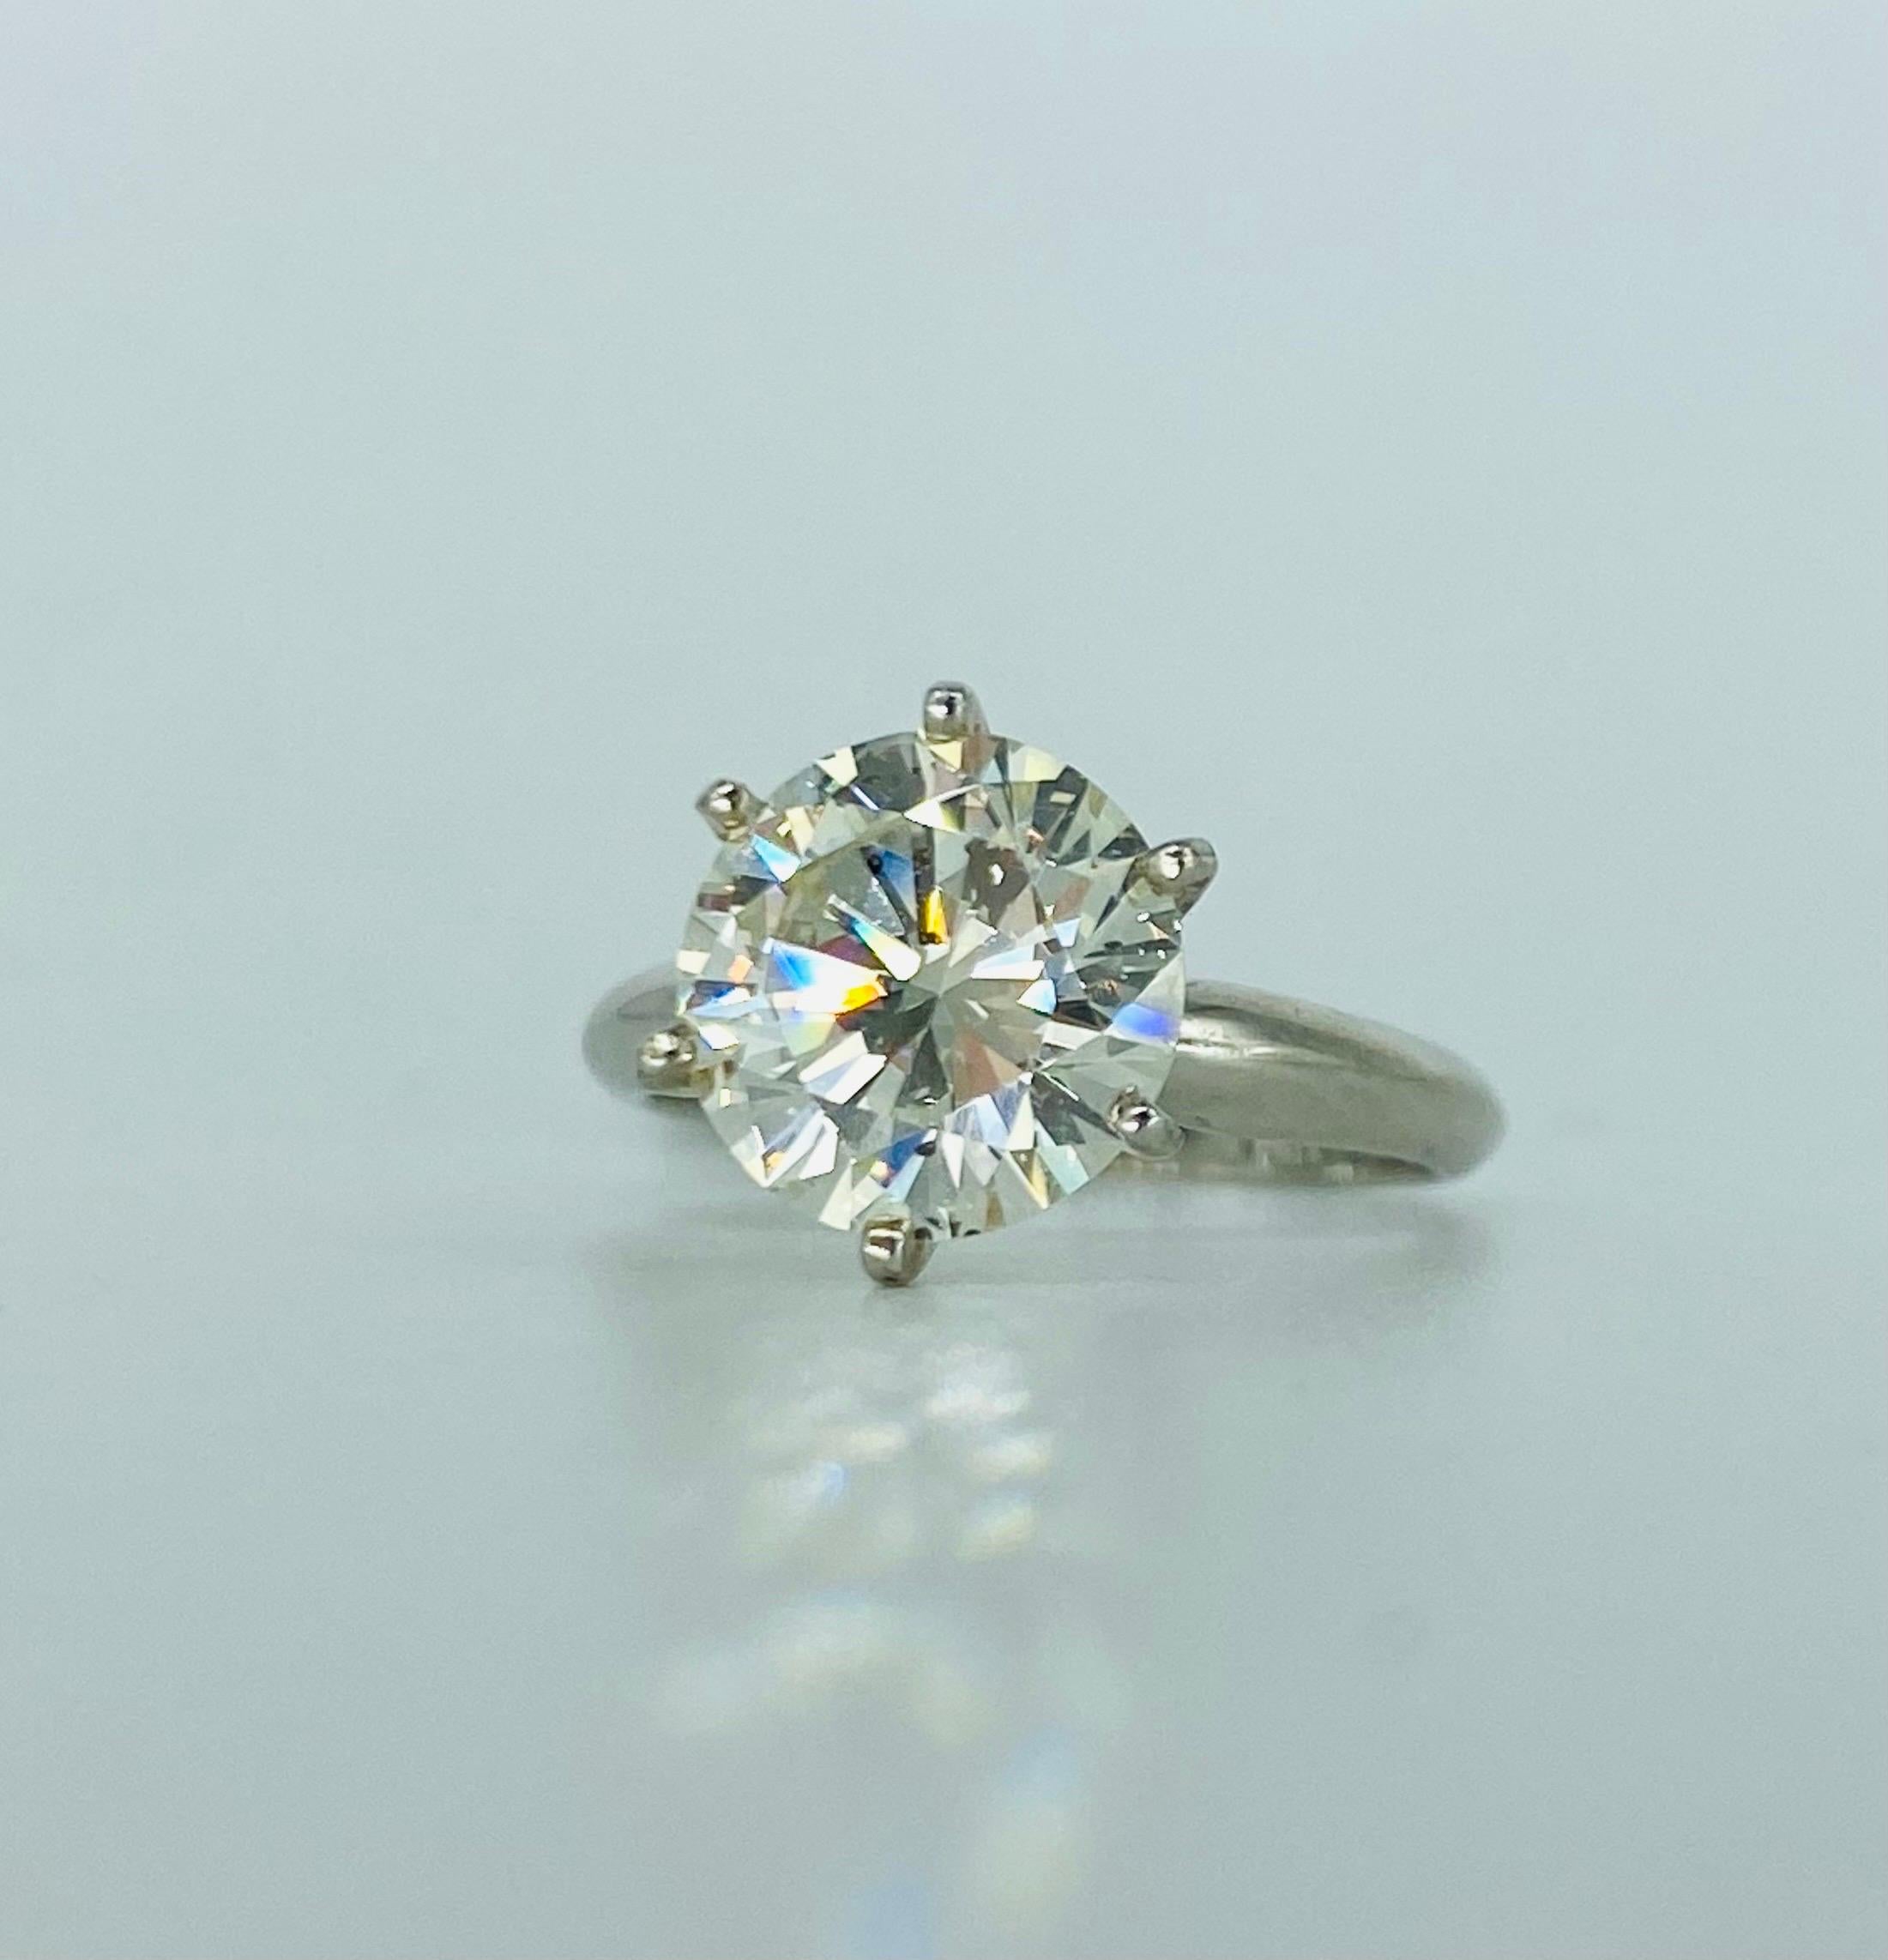 GIA-zertifizierter Diamantring mit 3,09 Karat.
Der Diamant hat ein sehr lebendiges Funkeln und ist ein natürlicher Diamant. Die Reinheit und Farbe des Diamanten wird von GIA als L/SI1 eingestuft.
Der Ring ist in 18k Weißgold gefasst und hat die